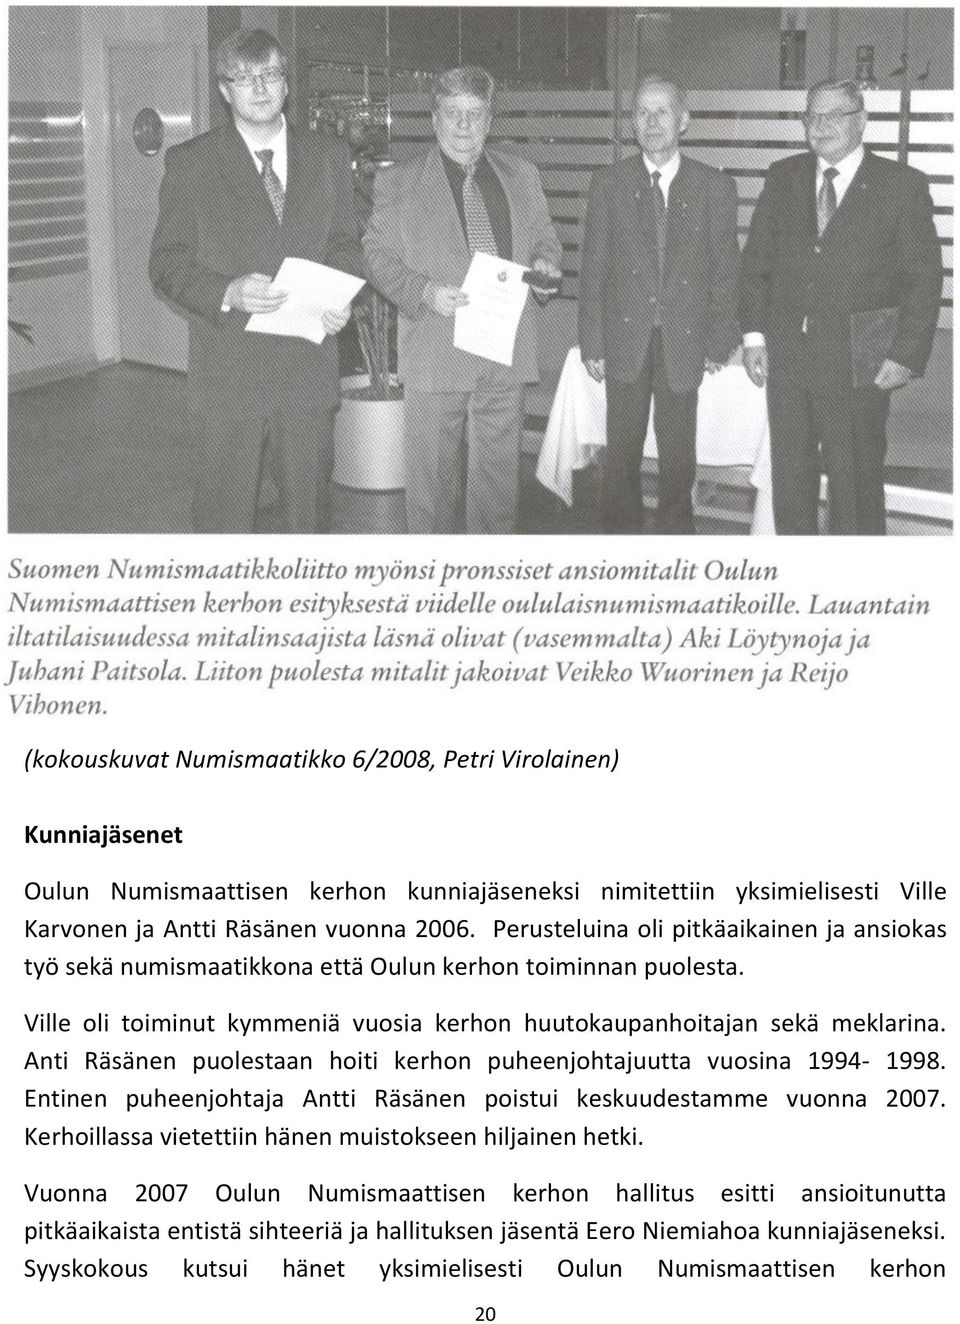 Anti Räsänen puolestaan hoiti kerhon puheenjohtajuutta vuosina 1994-1998. Entinen puheenjohtaja Antti Räsänen poistui keskuudestamme vuonna 2007.